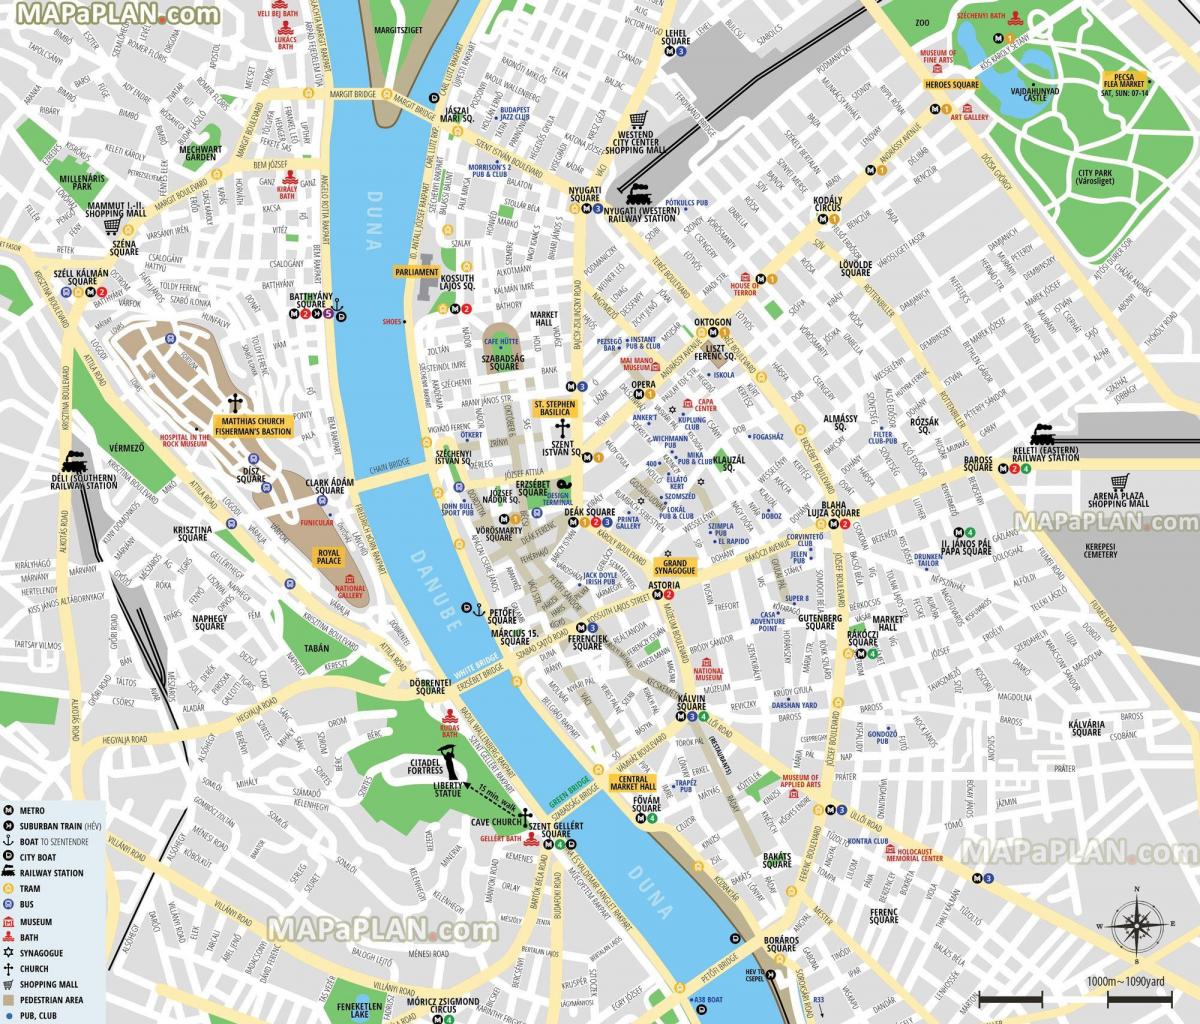 Mappa del centro di Budapest